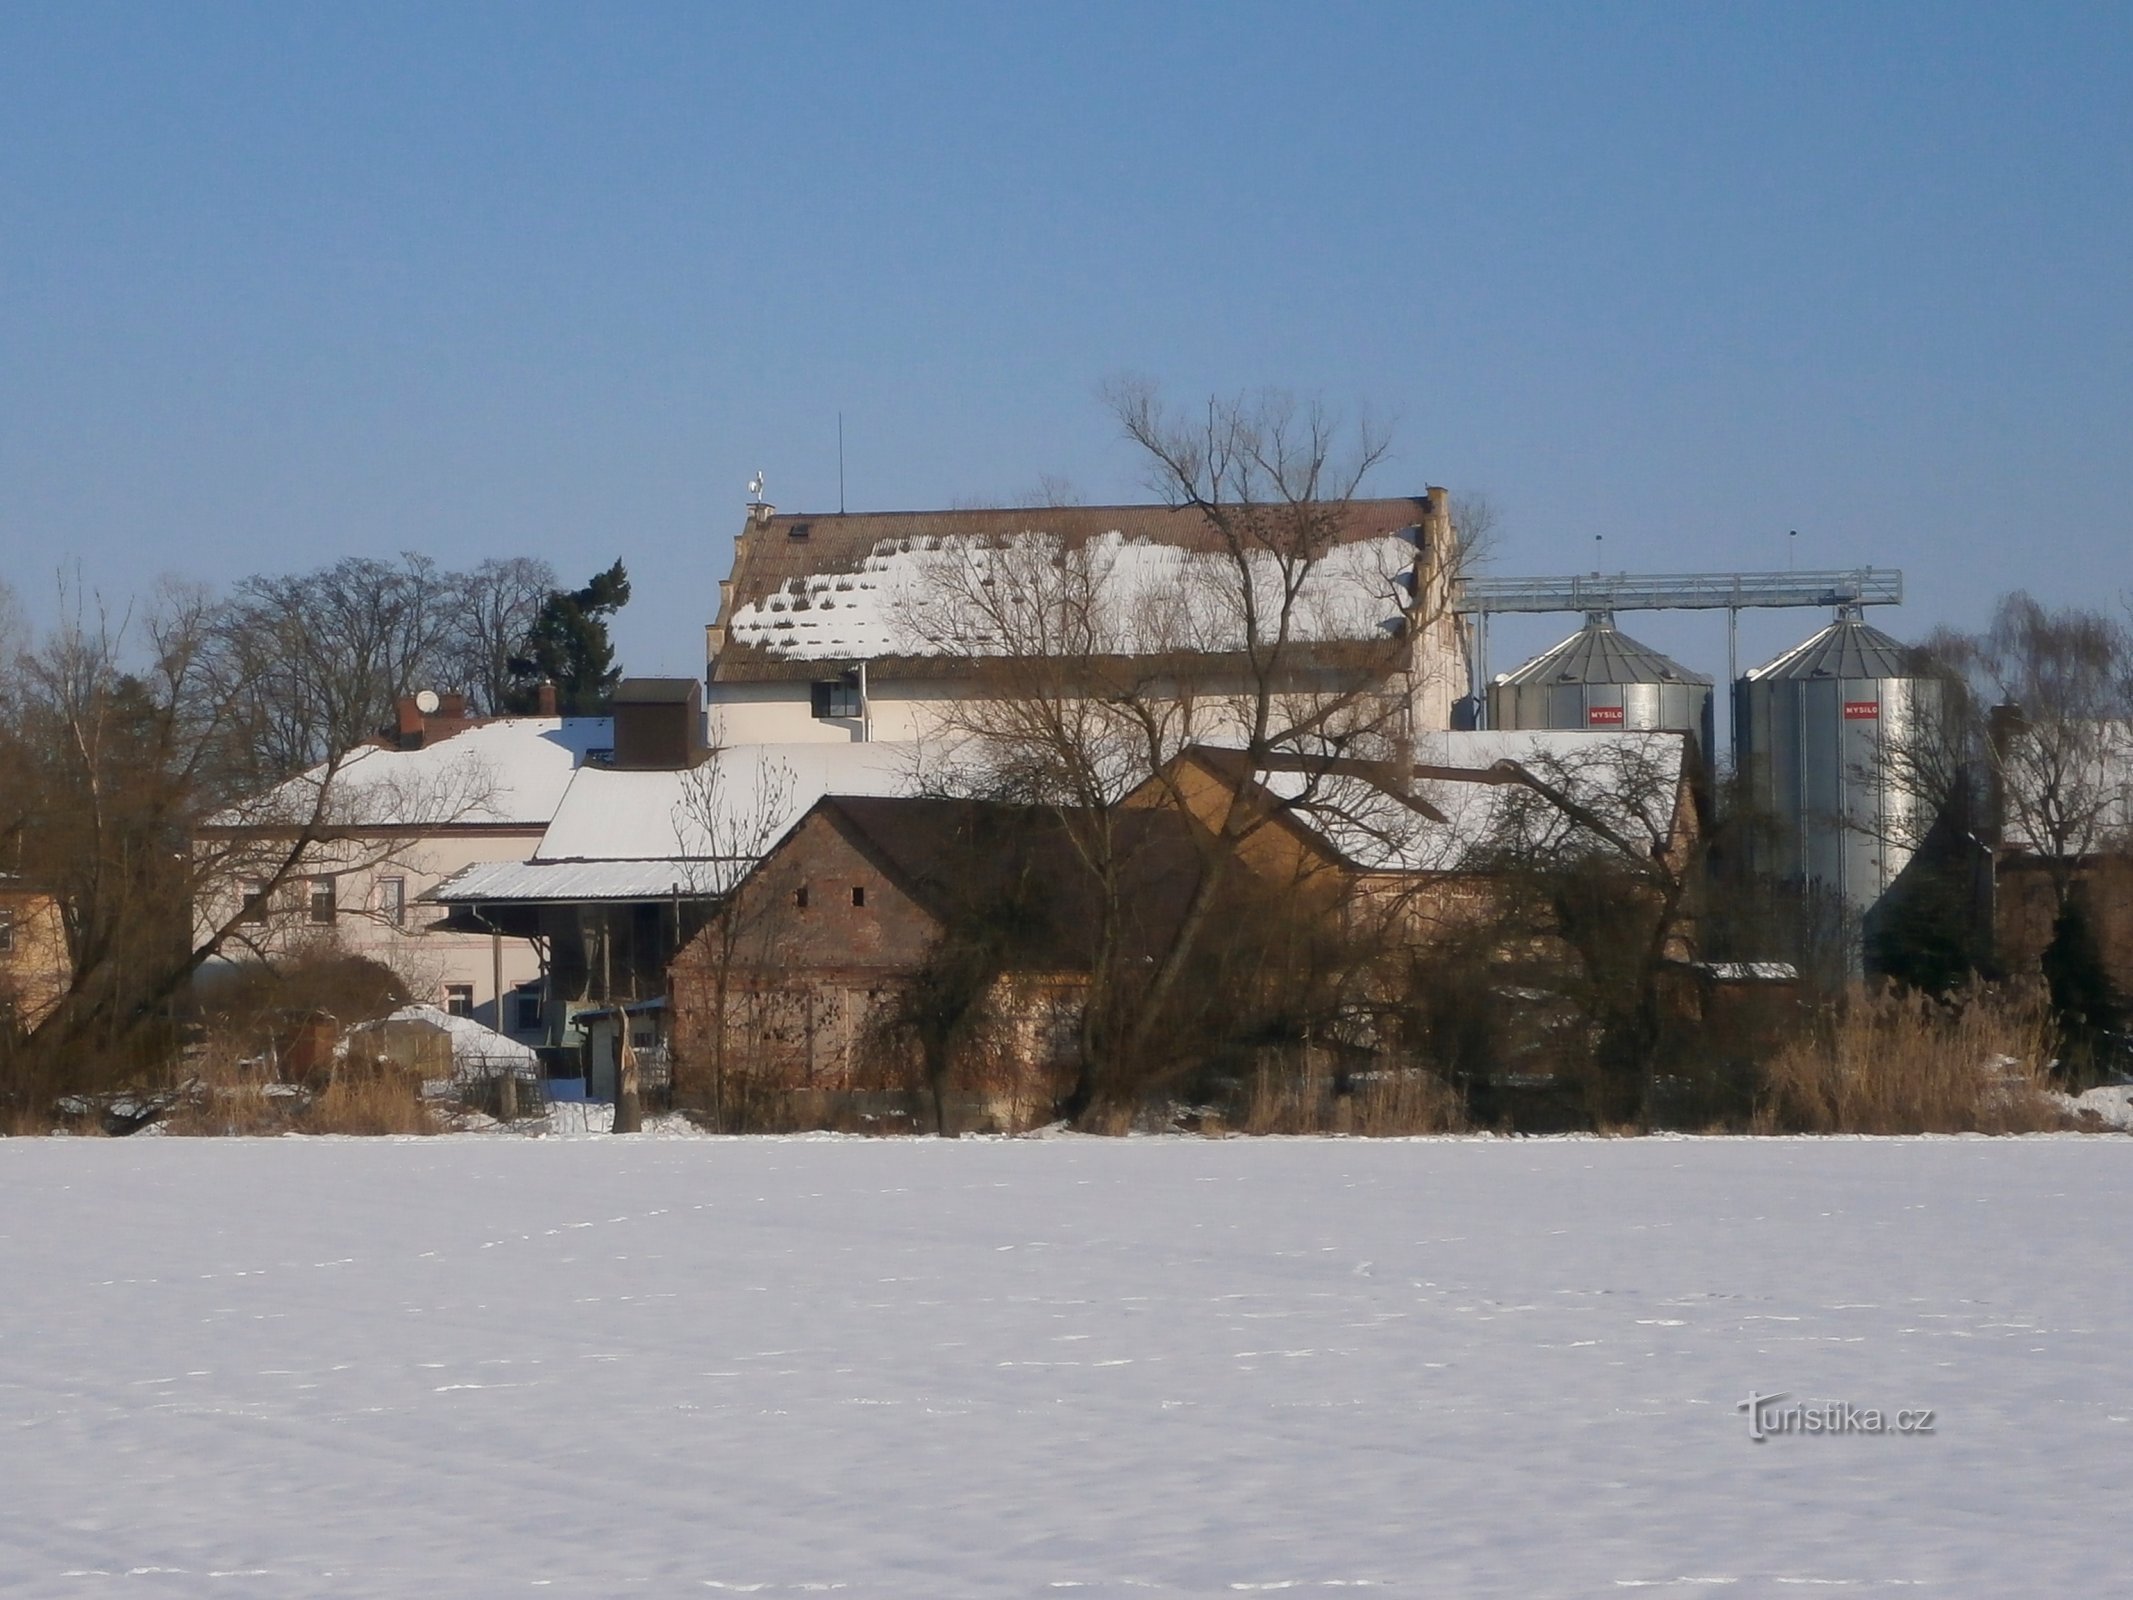 The former Kydlinov mill (Hradec Králové)